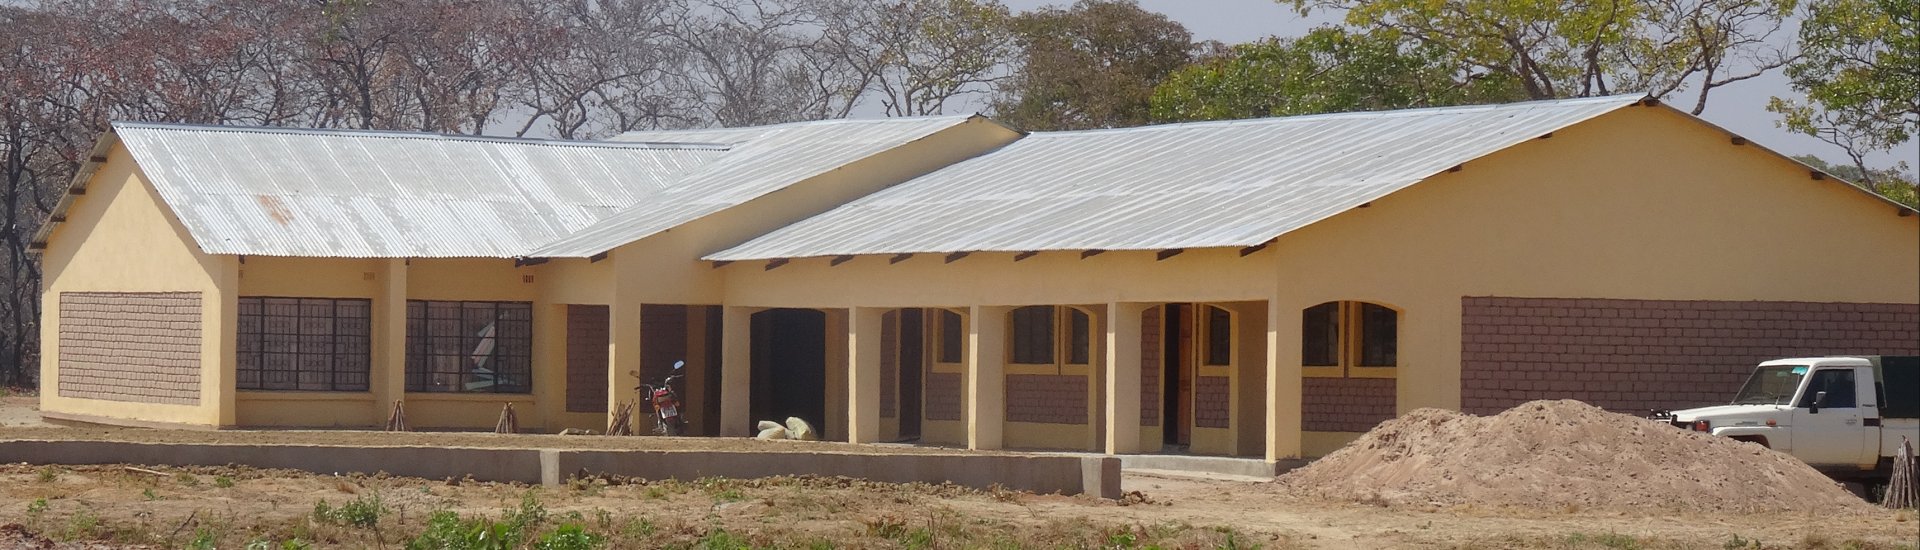 De Nkulumazhiba middelbare school in Zambia (Foto: UCN)